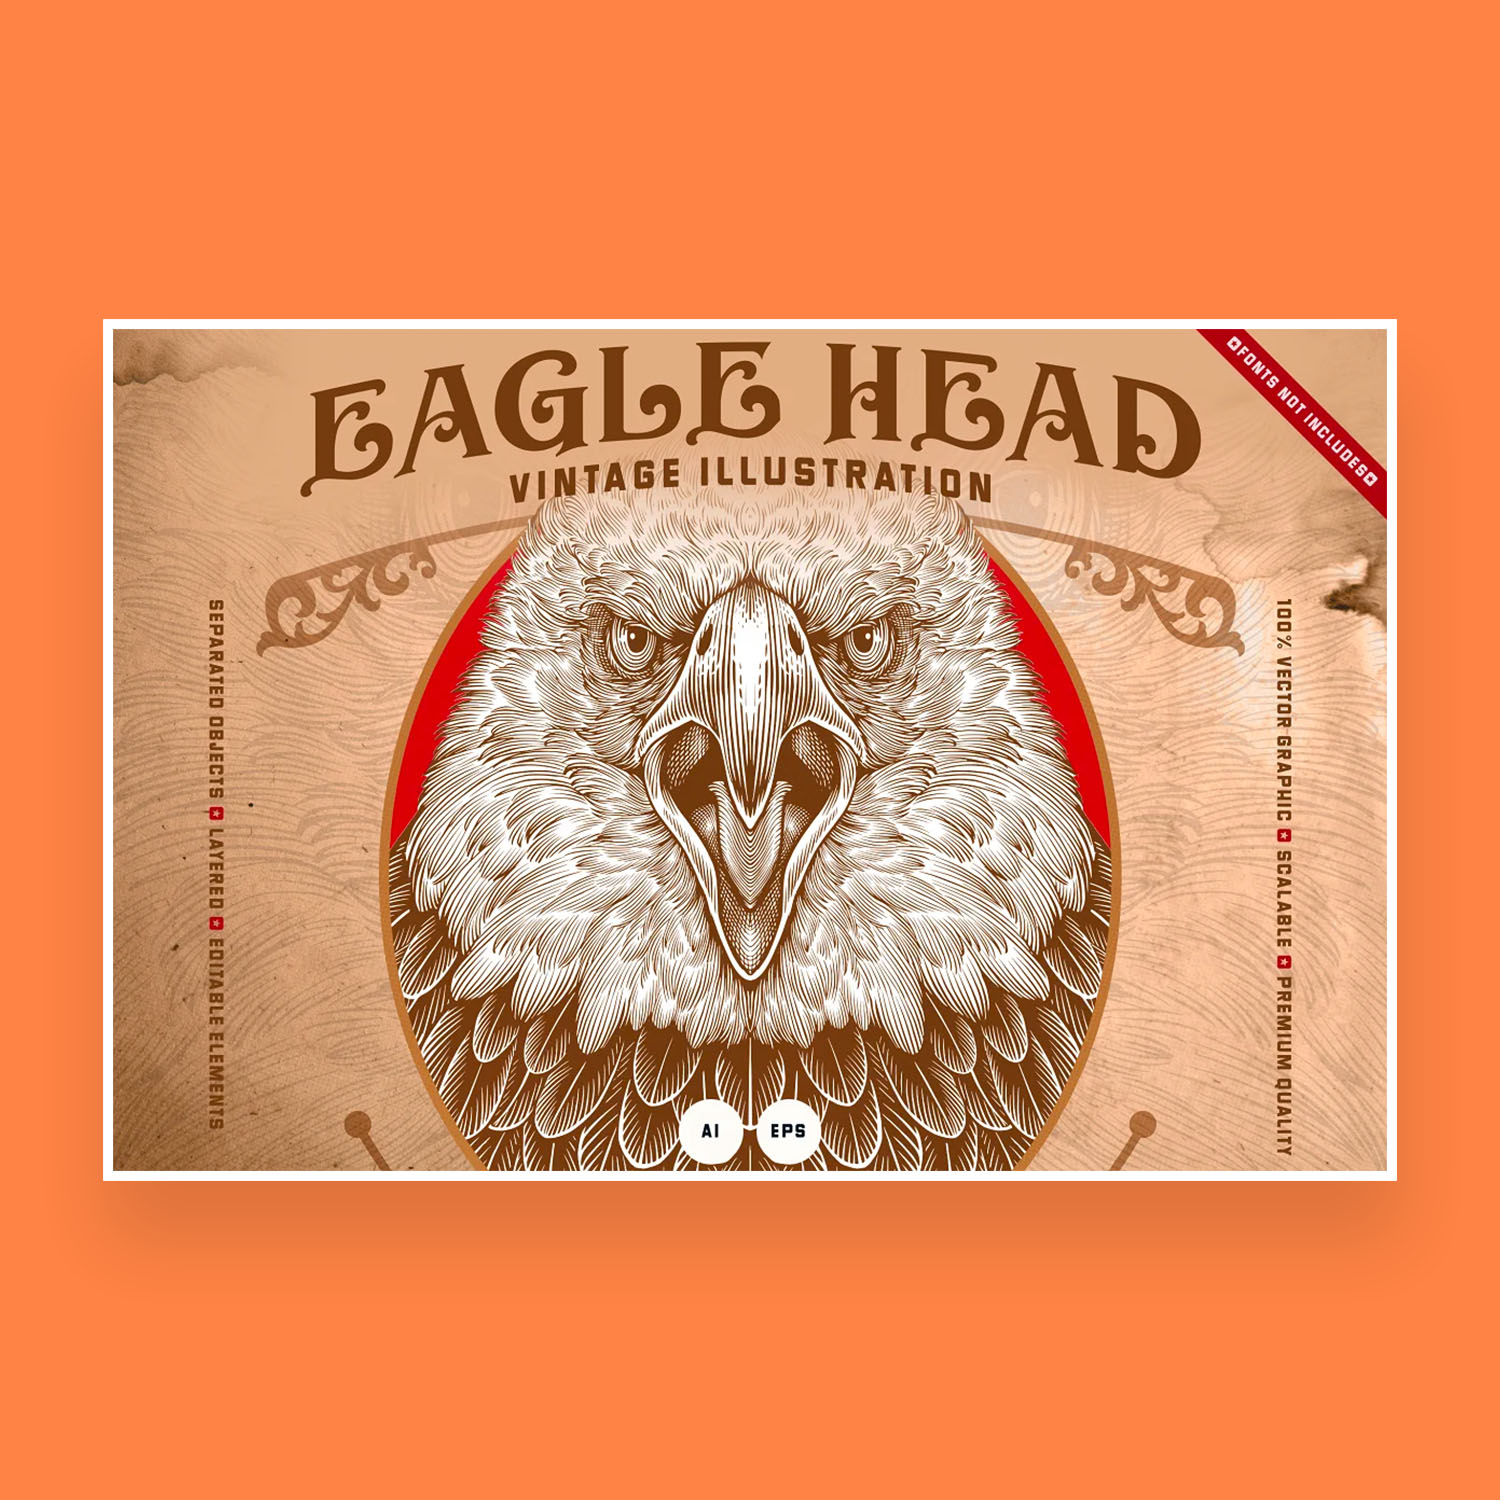 Eagle Head Illustration cover image.